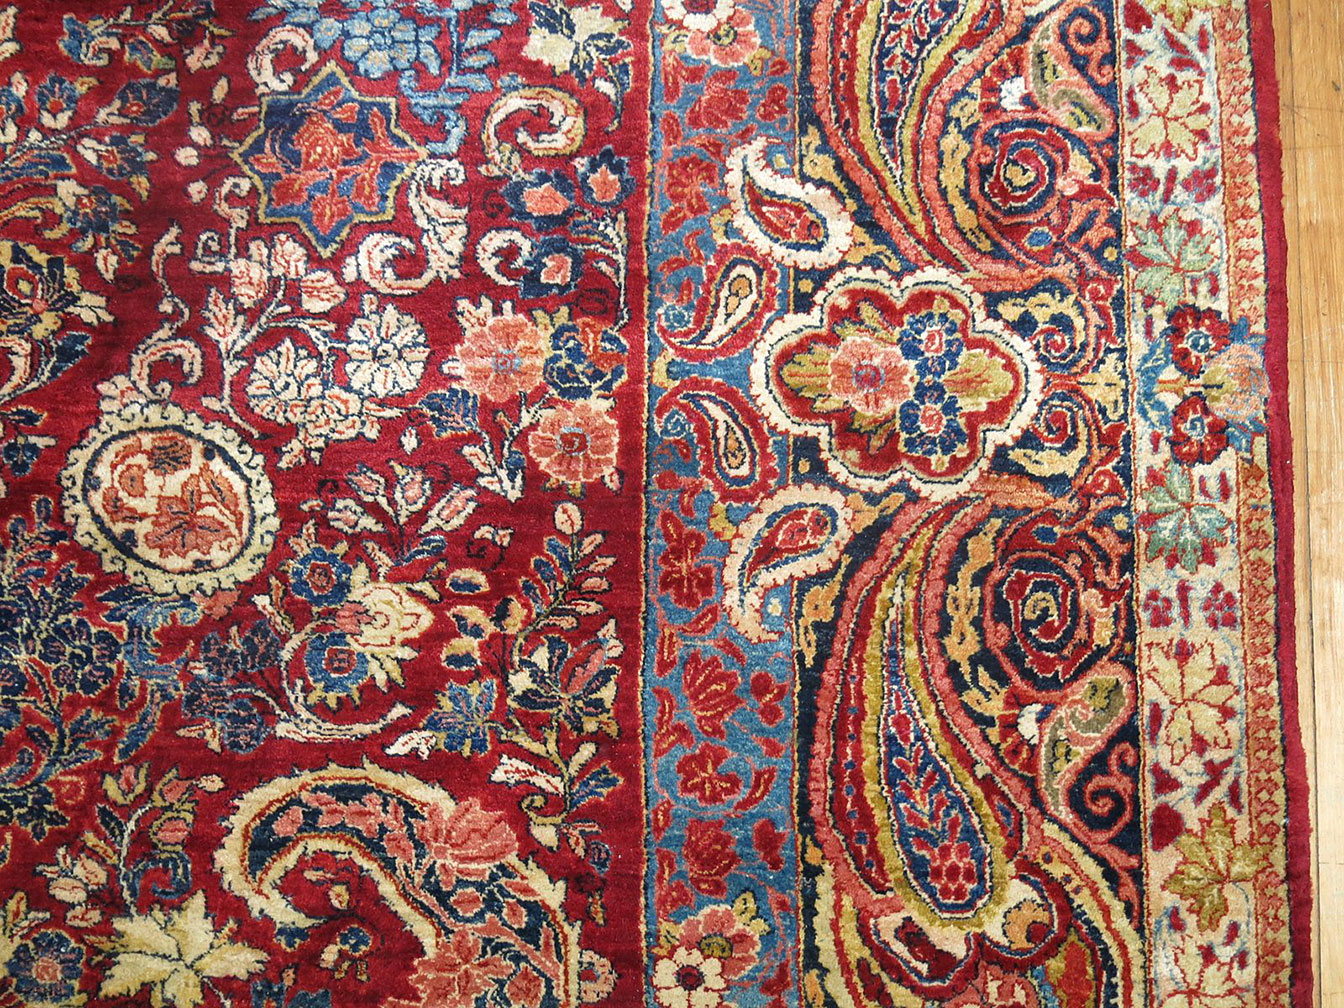 Vintage sarouk Carpet - # 53403